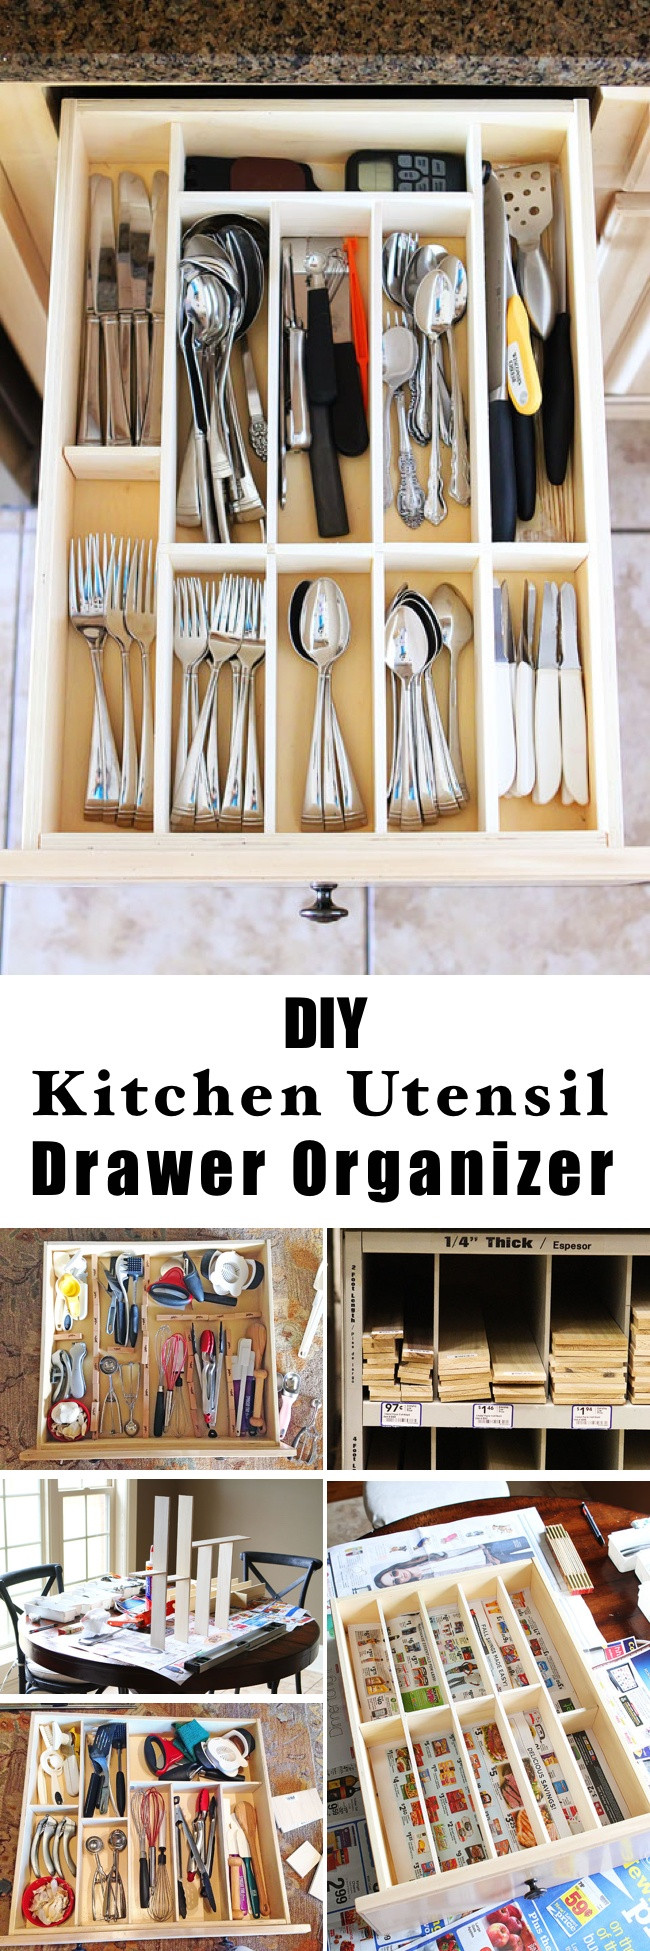 Kitchen Utensil Drawer Organizer
 15 Innovative DIY Kitchen Organization & Storage Ideas